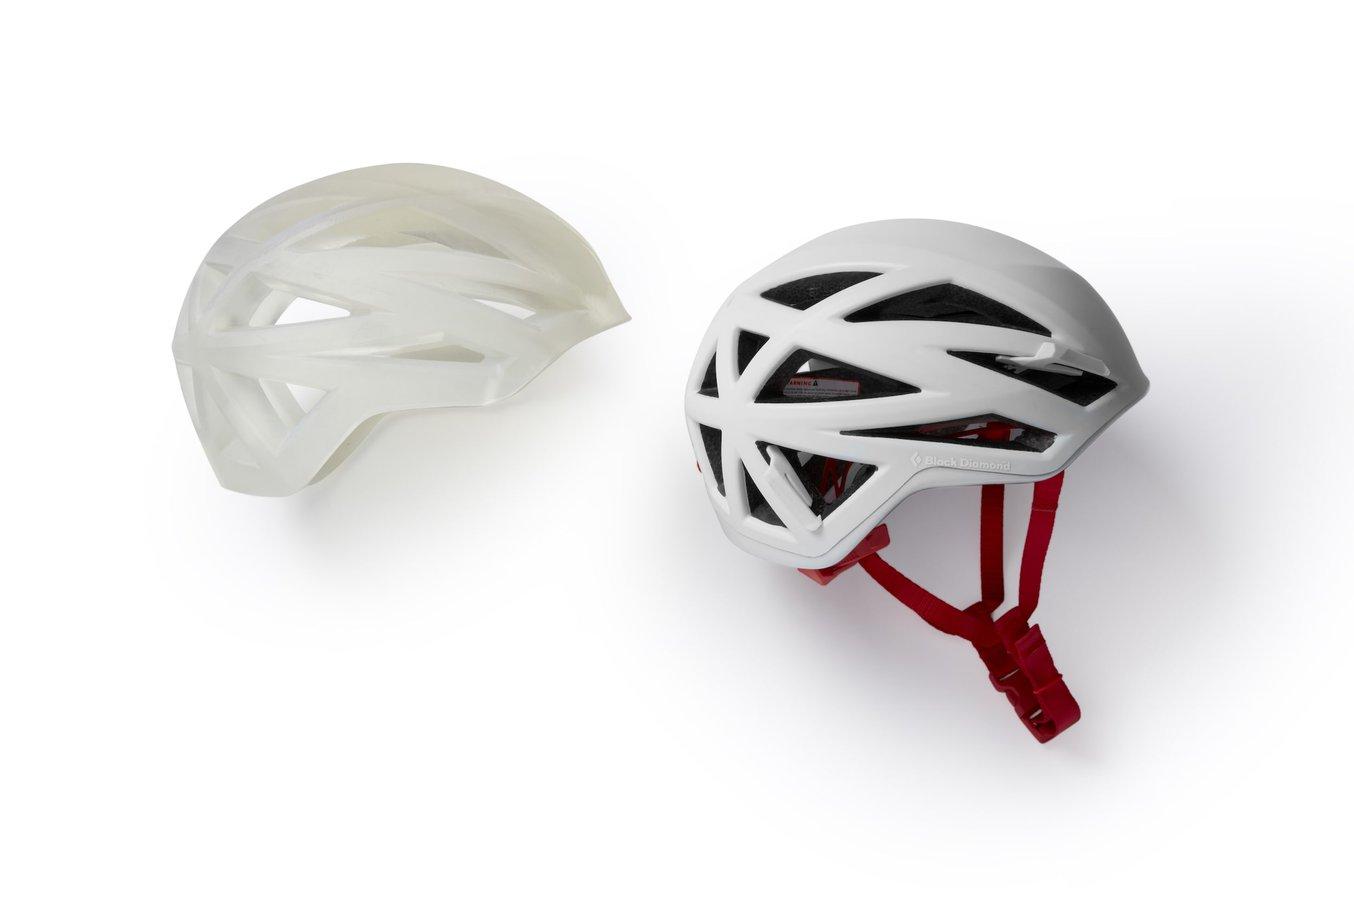 Der Form 3L eignet sich zum 3D-Druck größerer Prototypen wie etwa eines maßstabsgetreuen Helms.